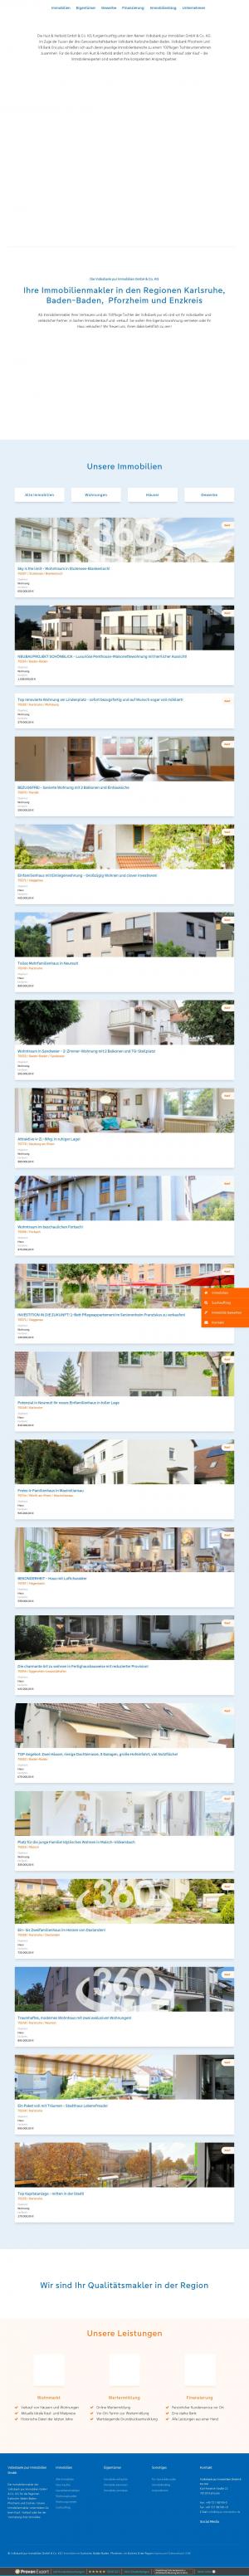 www.vbpur-immobilien.de